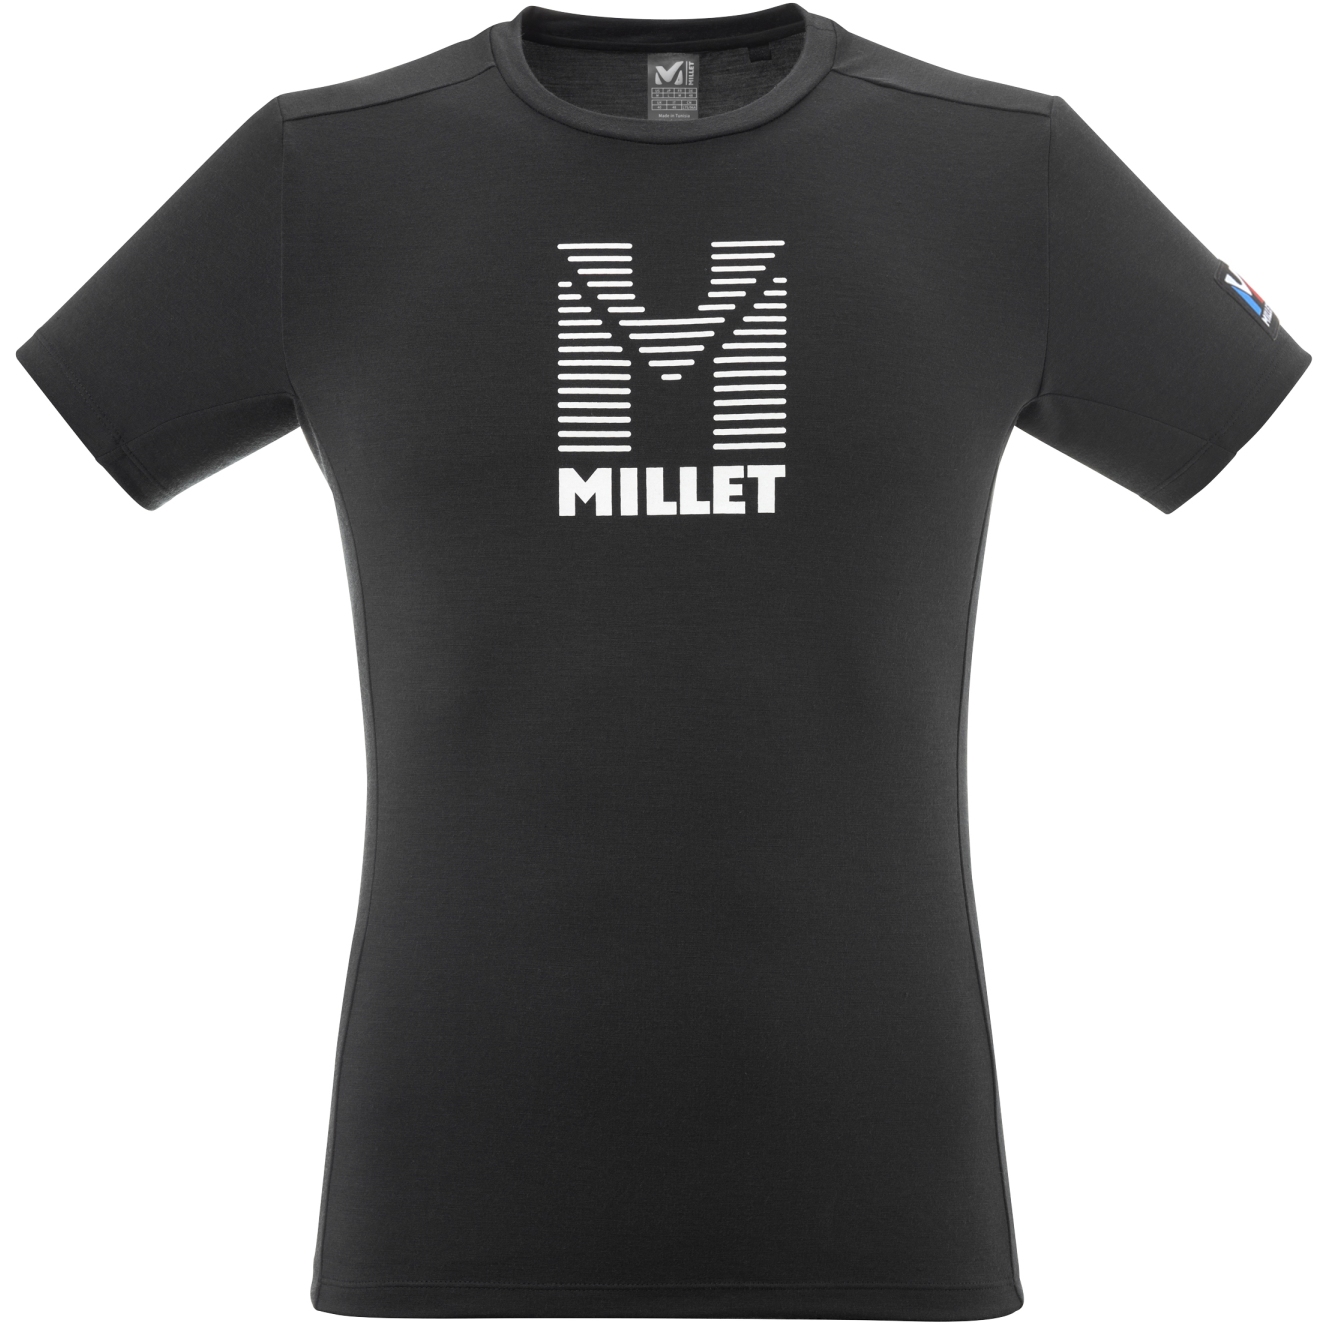 Produktbild von Millet Trilogy Wool Stripes Herren T-Shirt - Schwarz